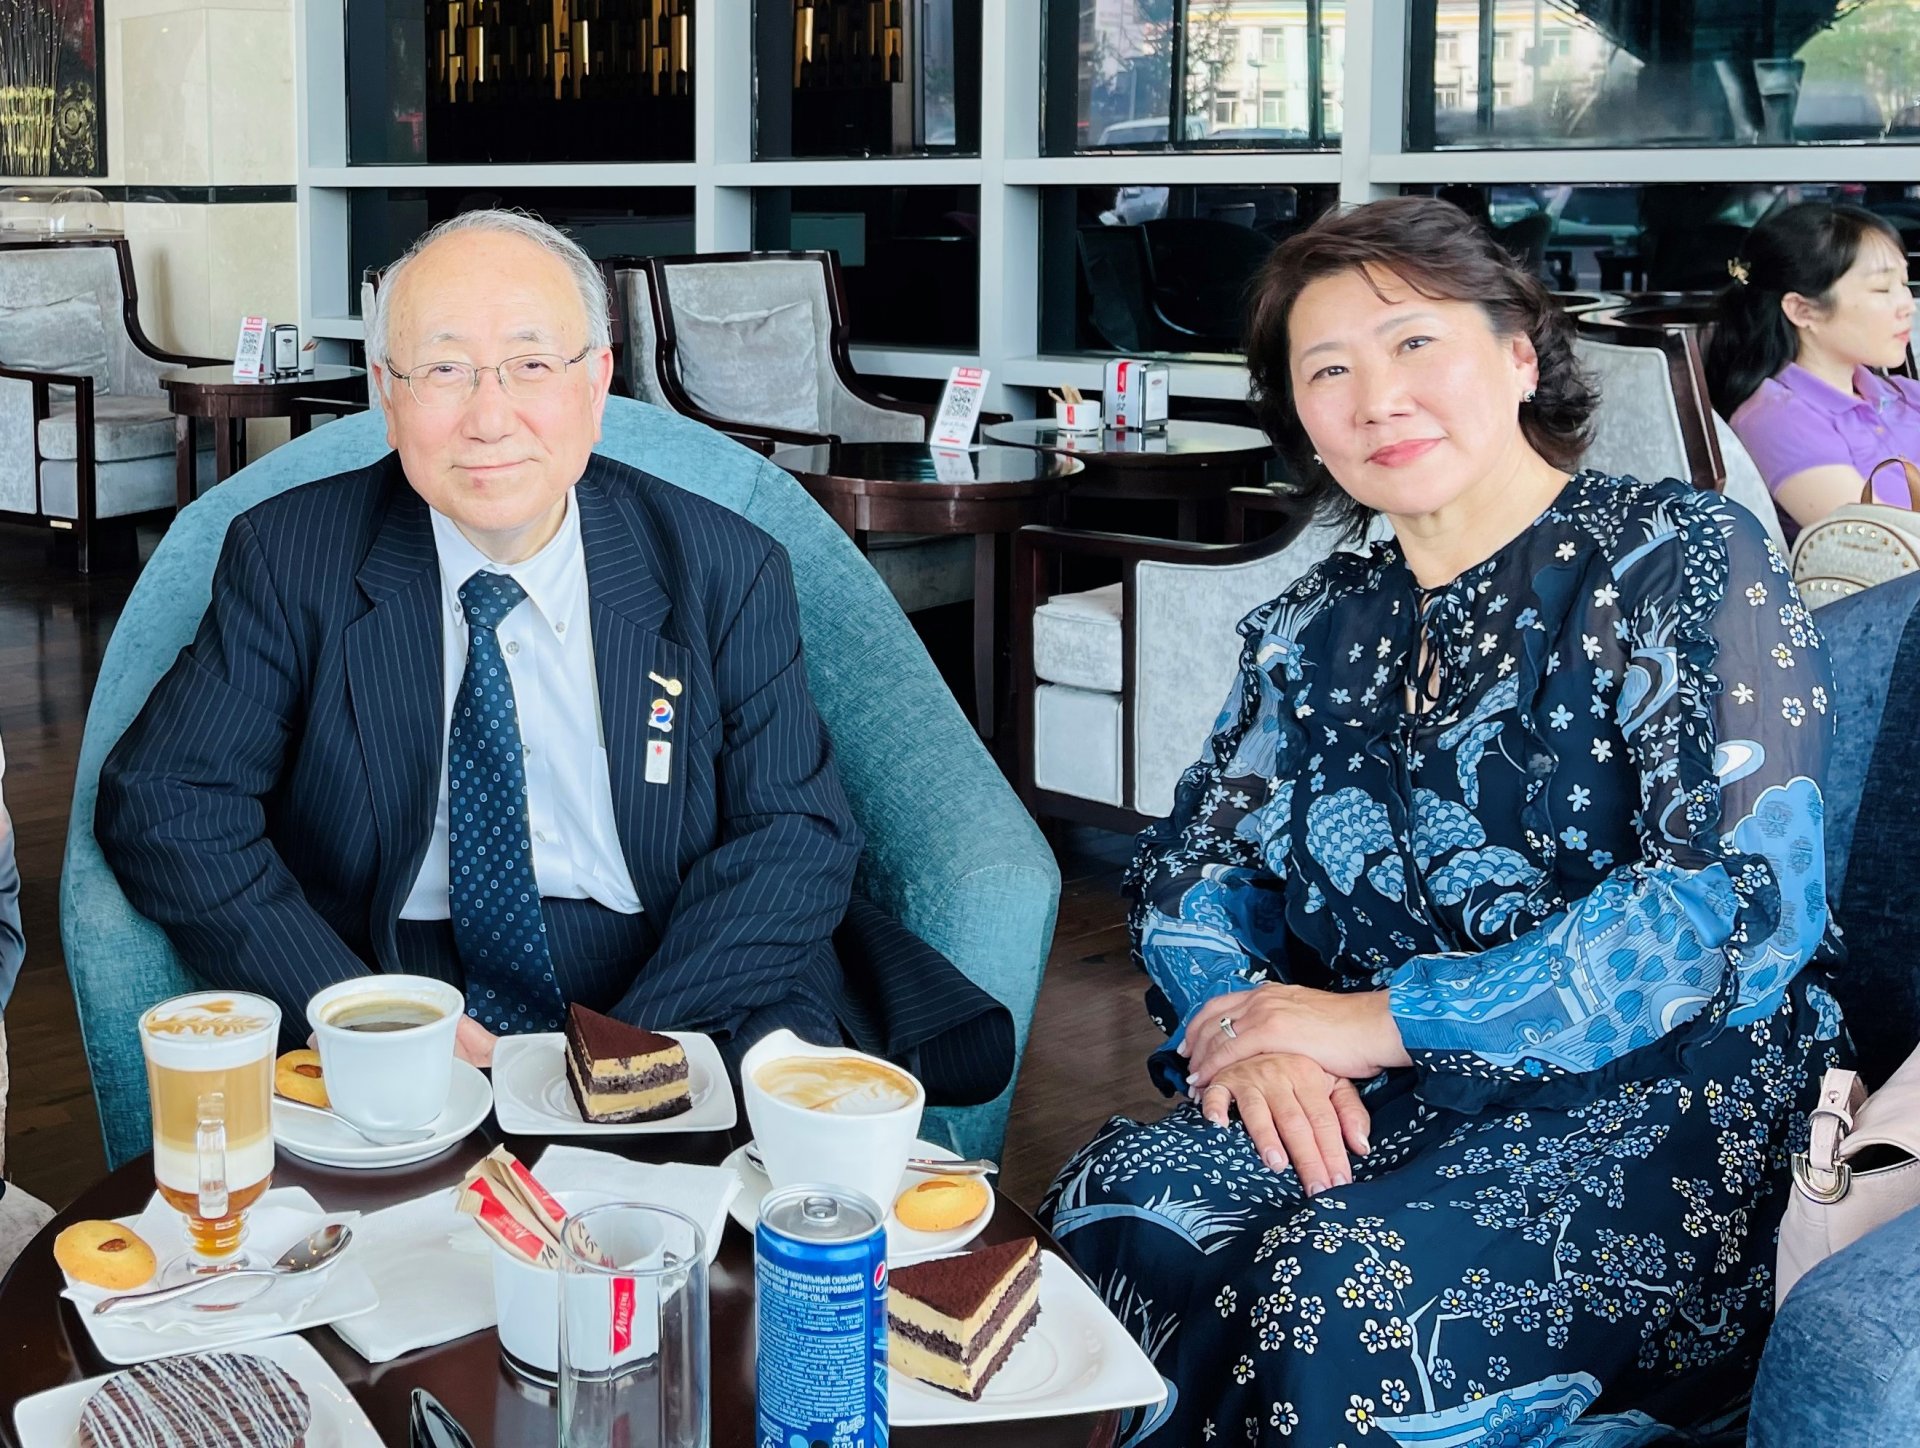 Япон улсын жайка олон улсын хамтын ажиллагааны байгууллагийн төлөөлөгч, хирошимагийн их сургуулийн профессор Koki Inai эмгэг судлалын үндэсний төвд айлчиллаа